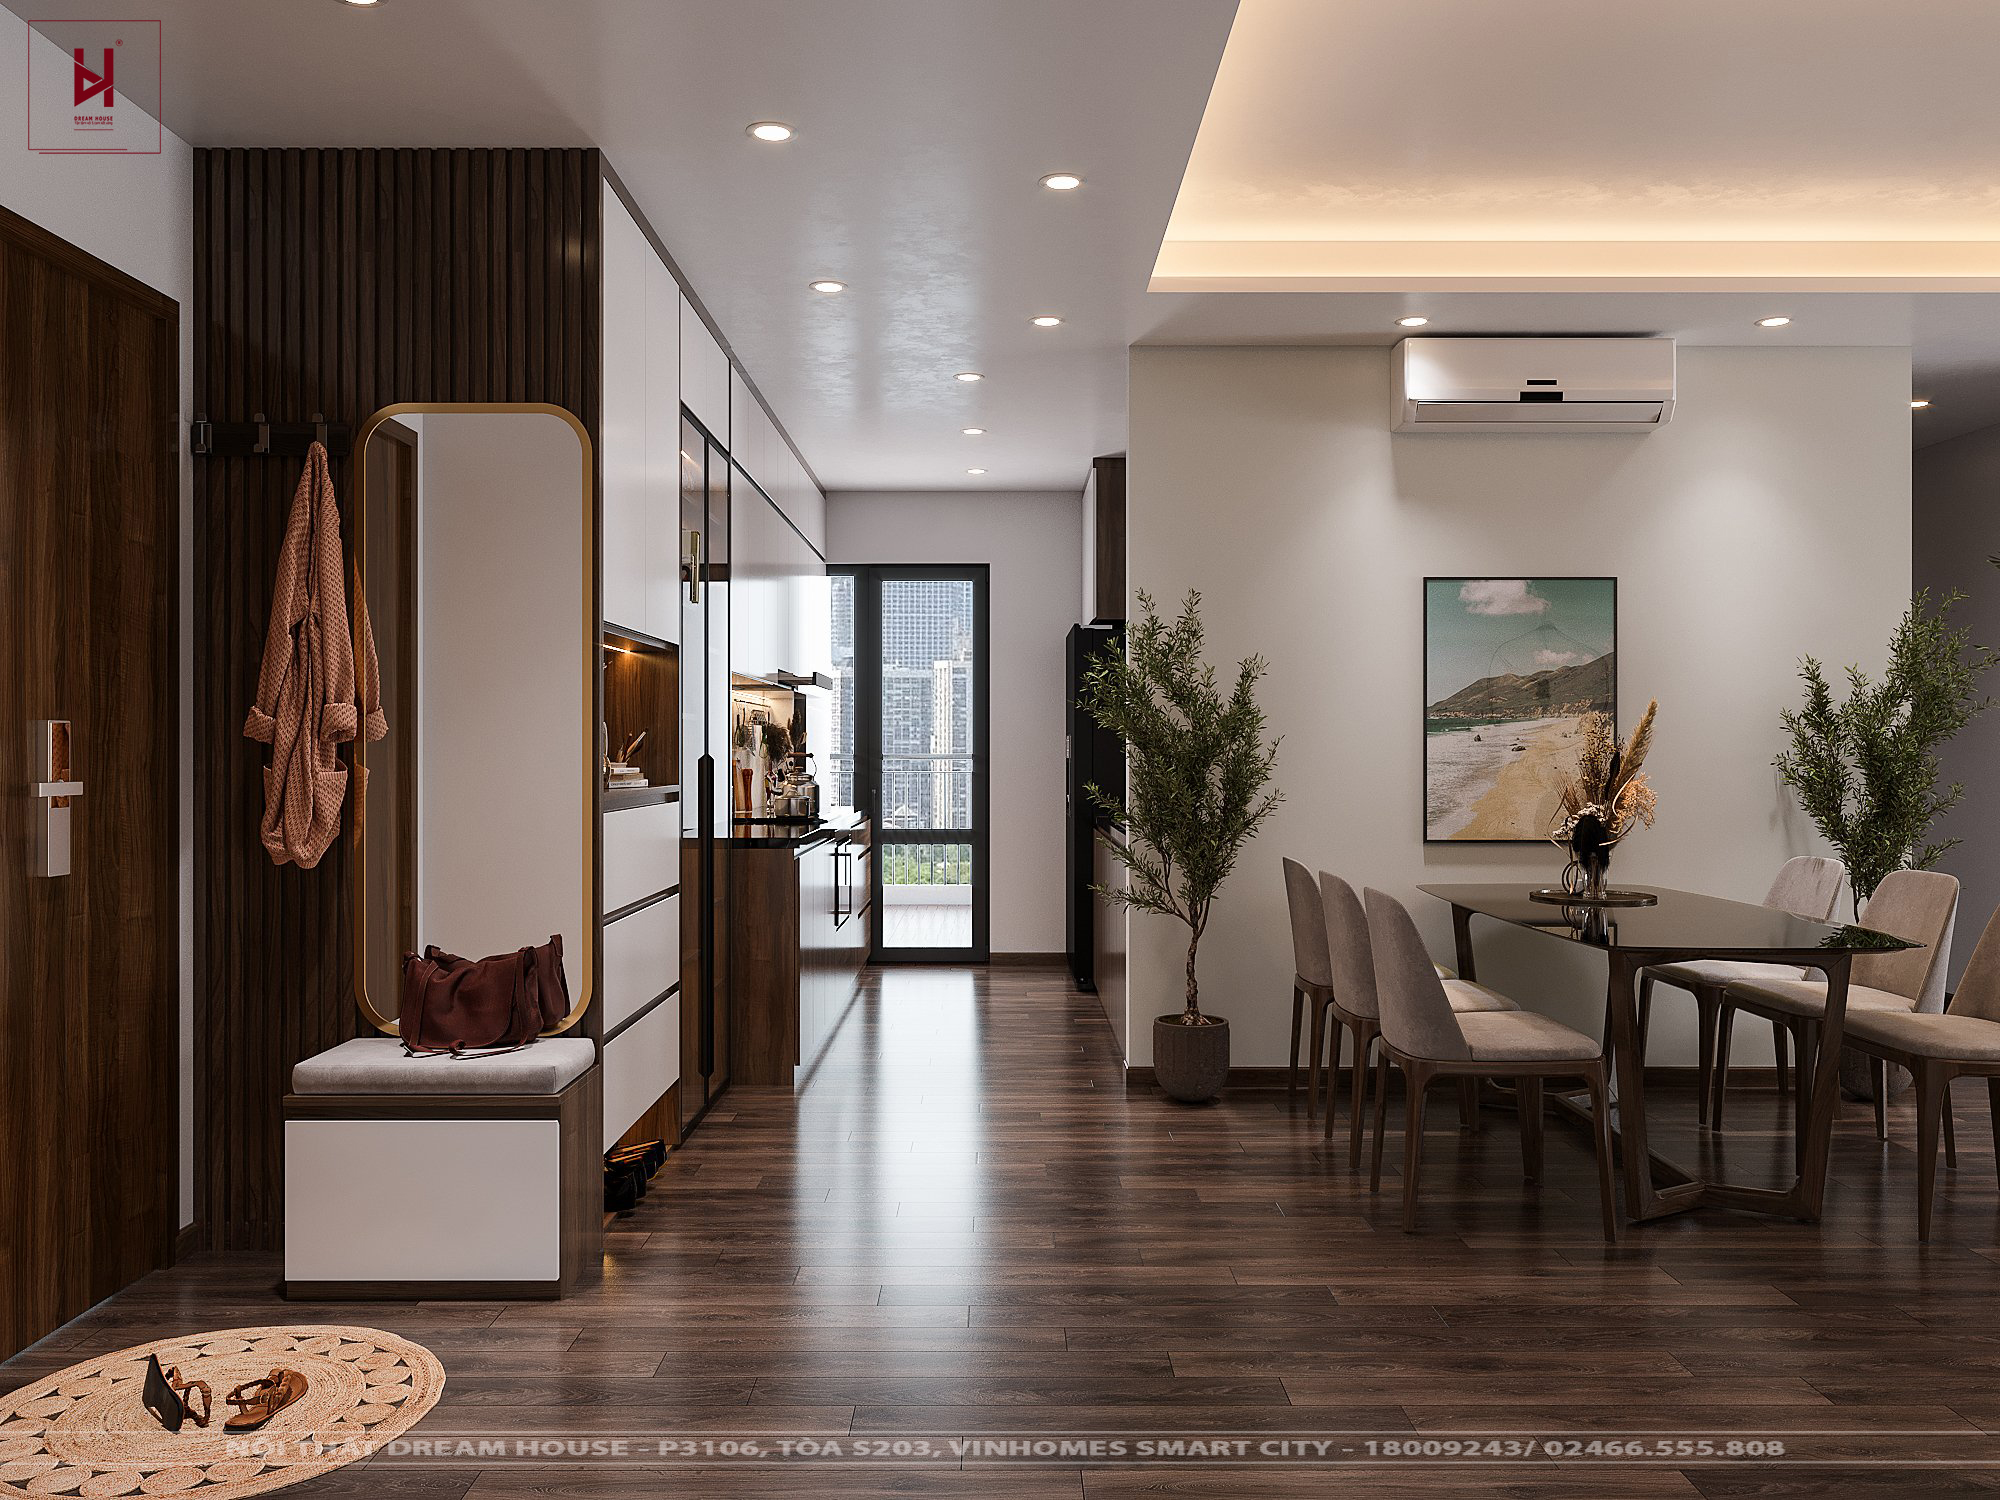 Thiết kế nội thất chung cư Ngoại Giao Đoàn 101m2 2024 sẽ lôi cuốn bạn bởi không gian mở, tạo cảm giác rộng rãi, thoải mái, tối đa thể hiện tính thẩm mỹ đẳng cấp. Với thiết kế độc đáo, tiện nghi, chất lượng, mang tới không gian sống đáng mơ ước cho gia đình bạn.